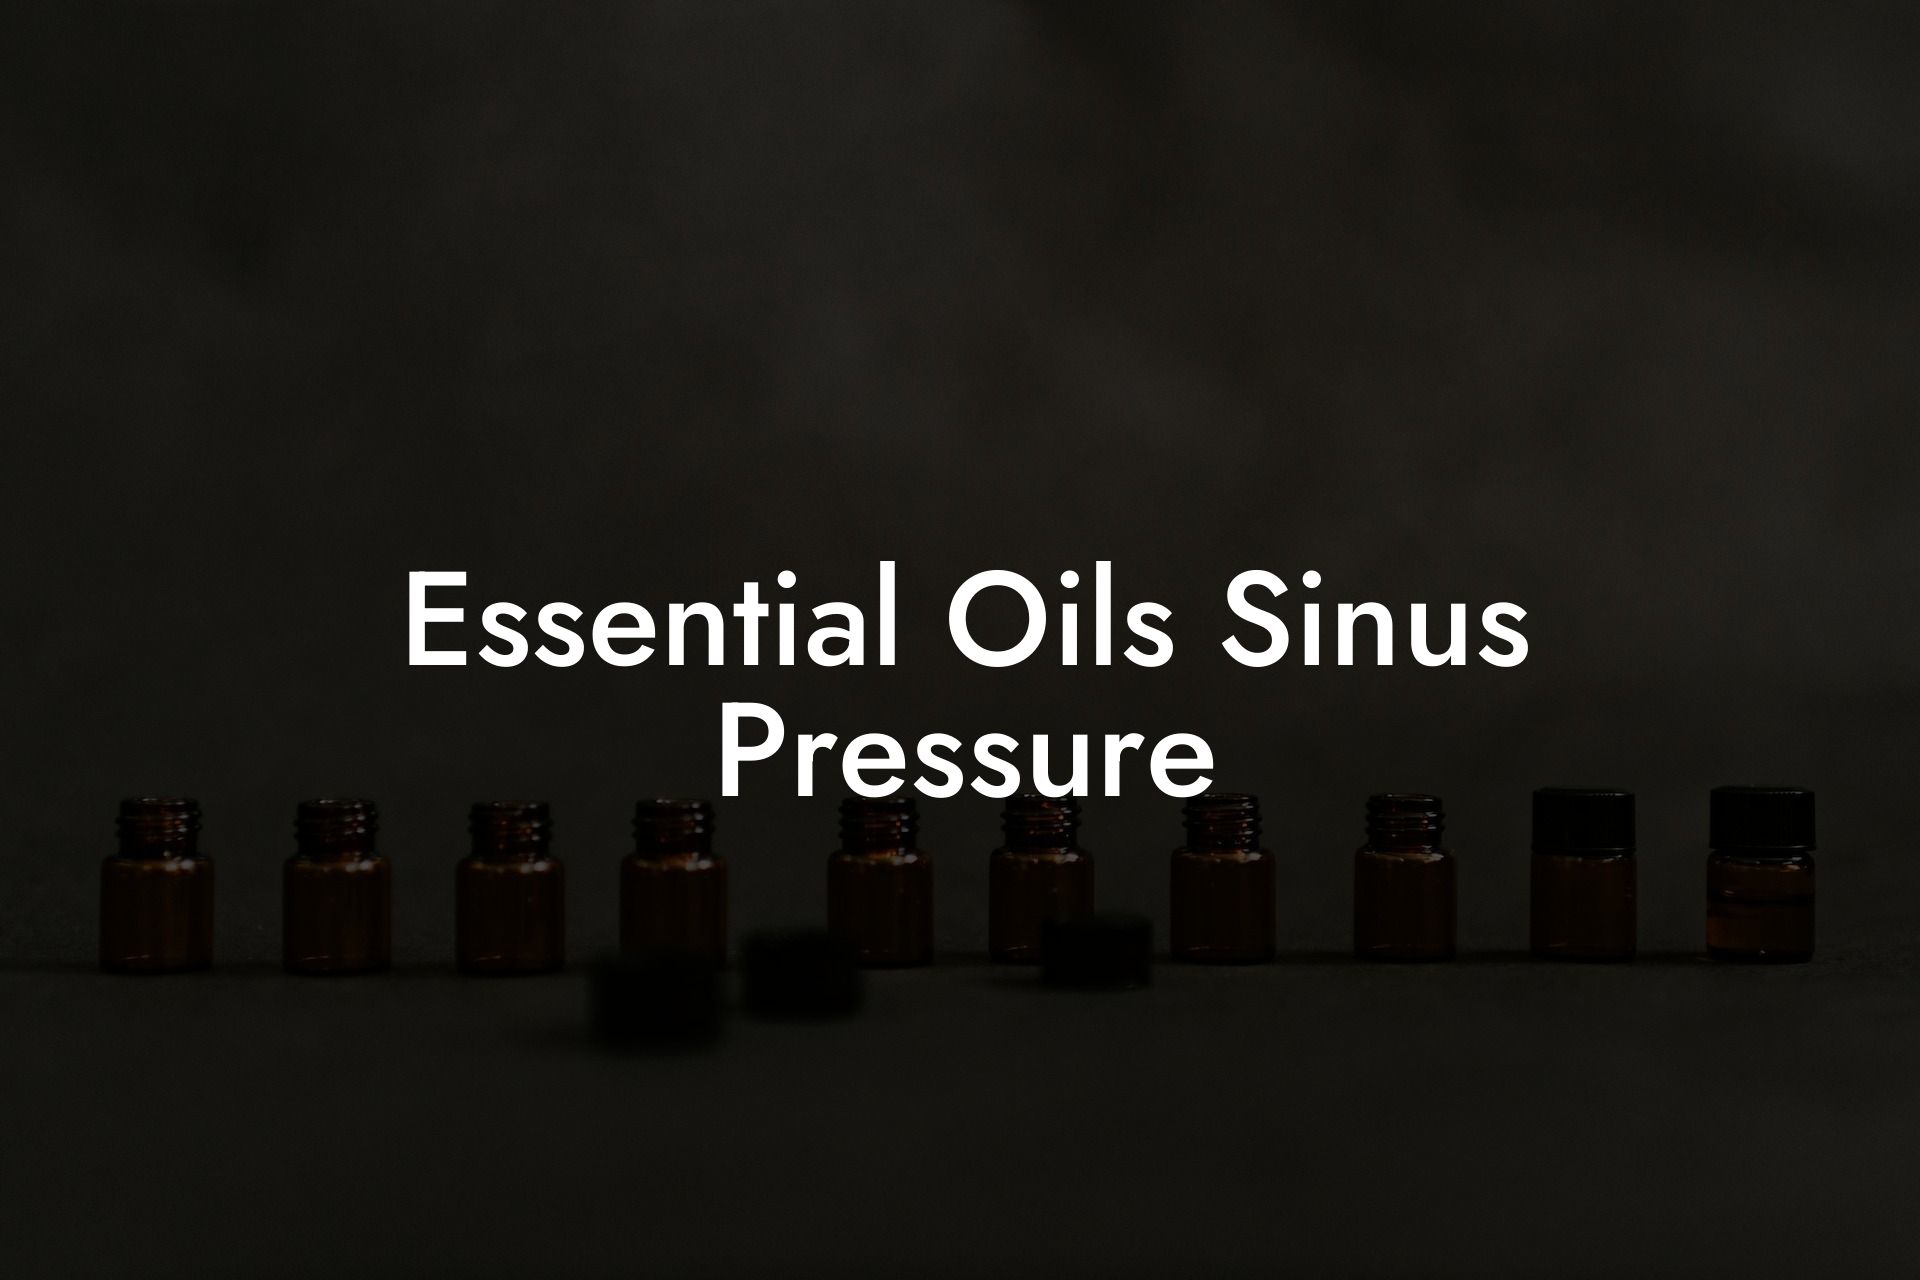 Essential Oils Sinus Pressure